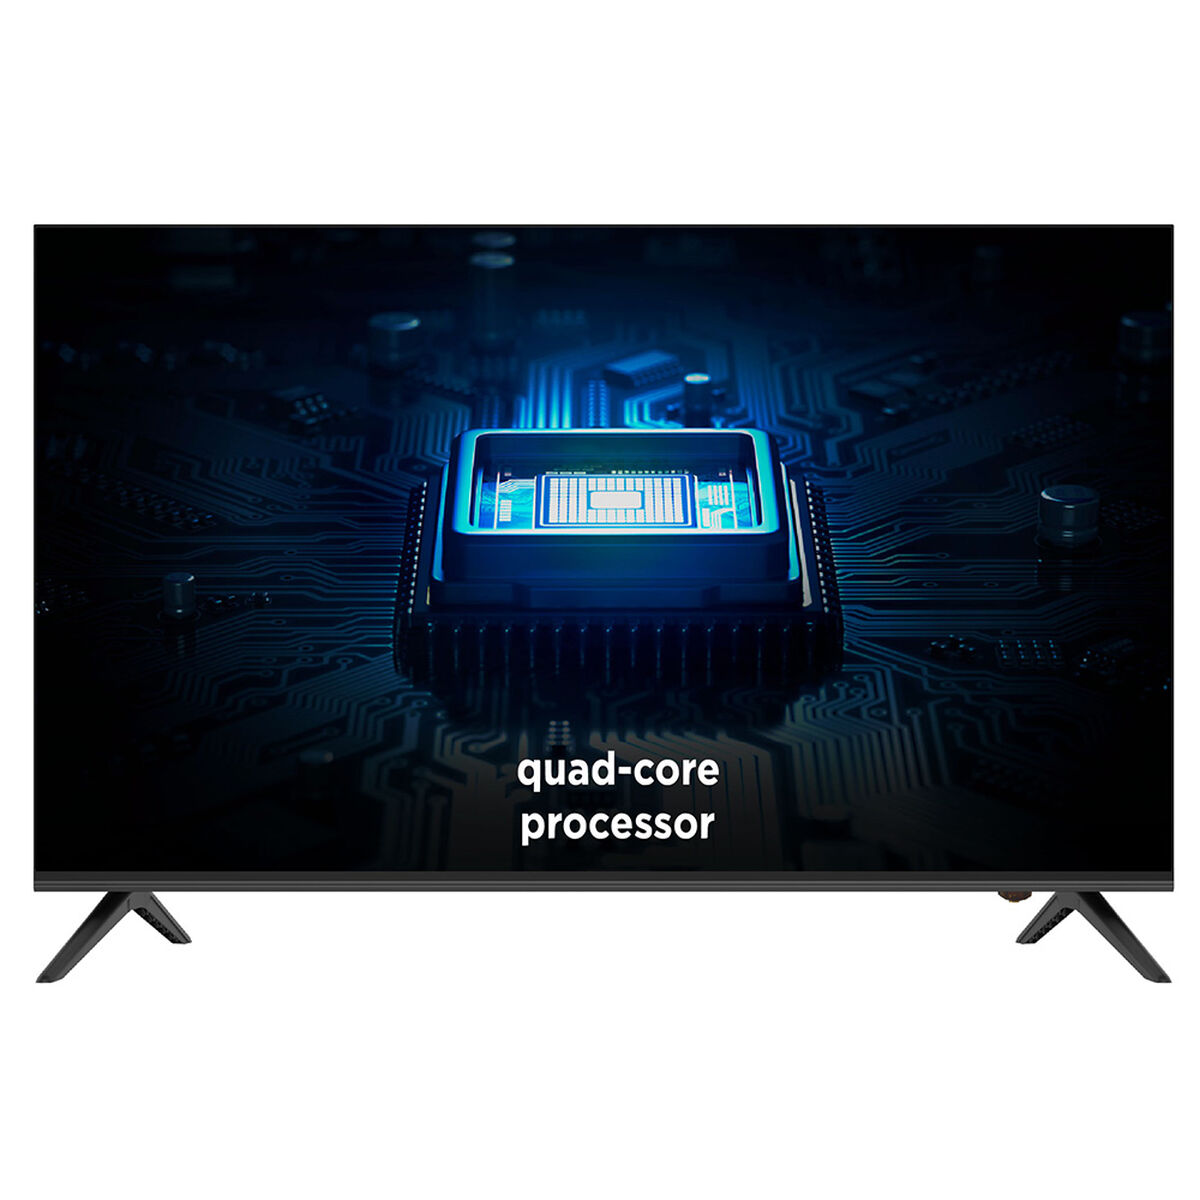 LED 32" Caixun C32V1HA  Android TV Smart TV HD